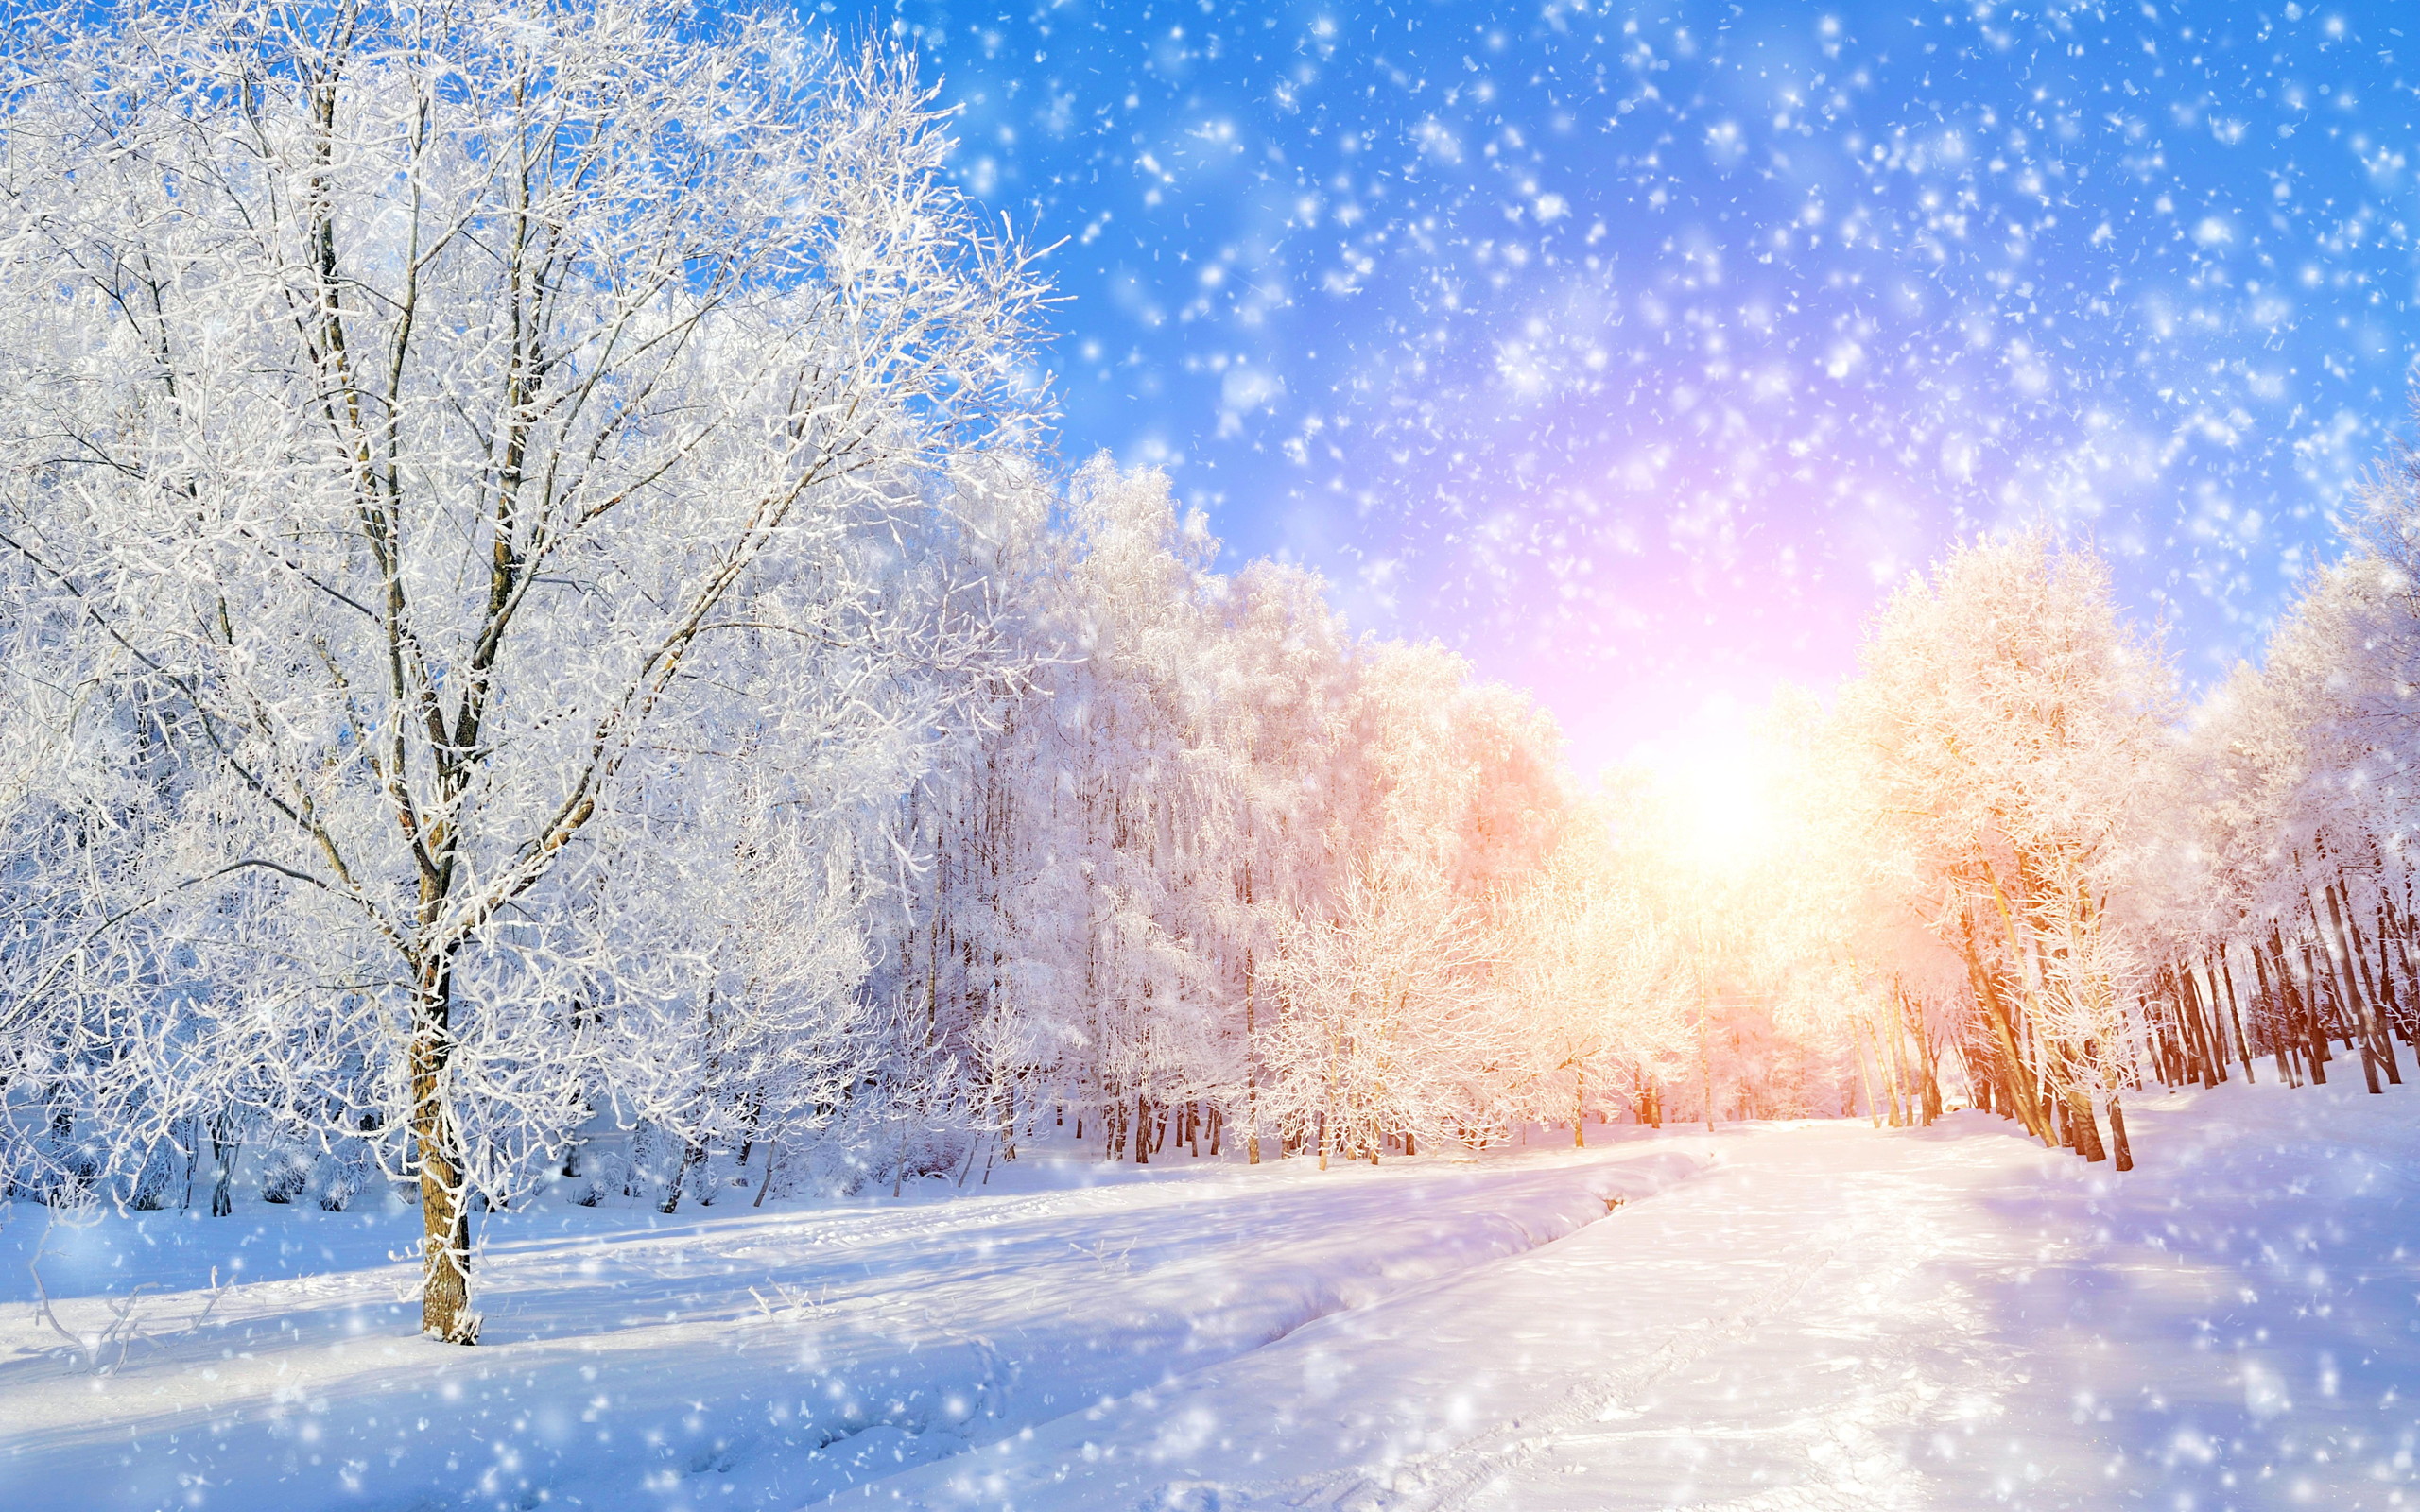 Tổng hợp hình ảnh mùa đông đẹp nhất - Ảnh đẹp mùa đông